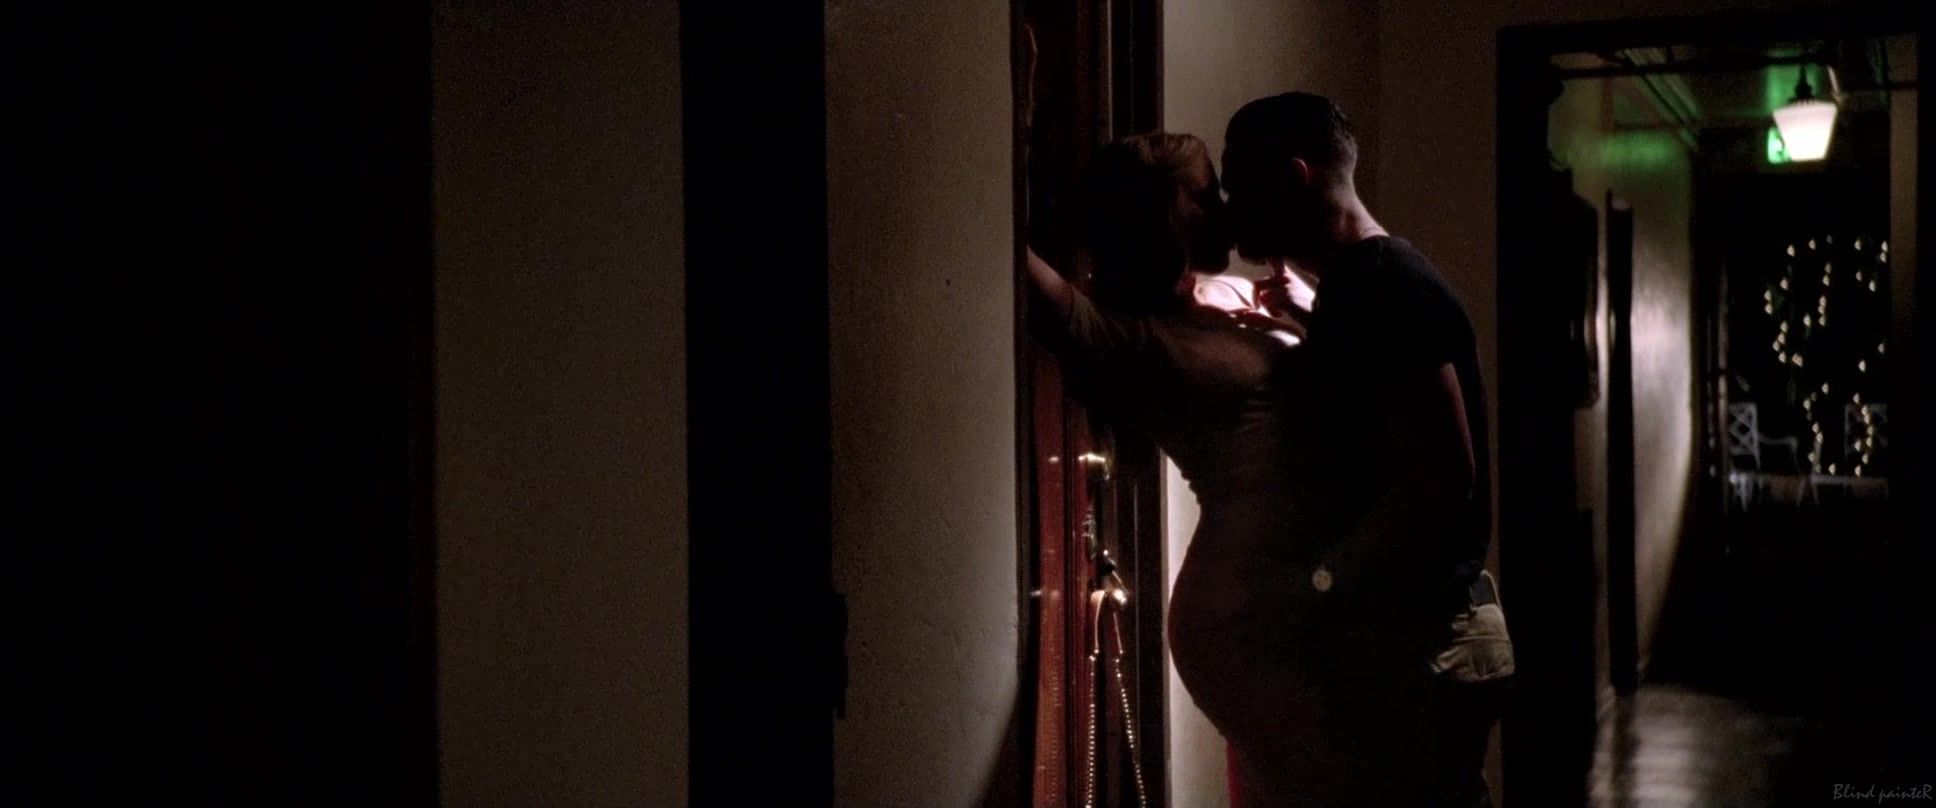 TheDollWarehouse Sex video Scarlett Johansson nude - Don Jon (2013) Escort - 1